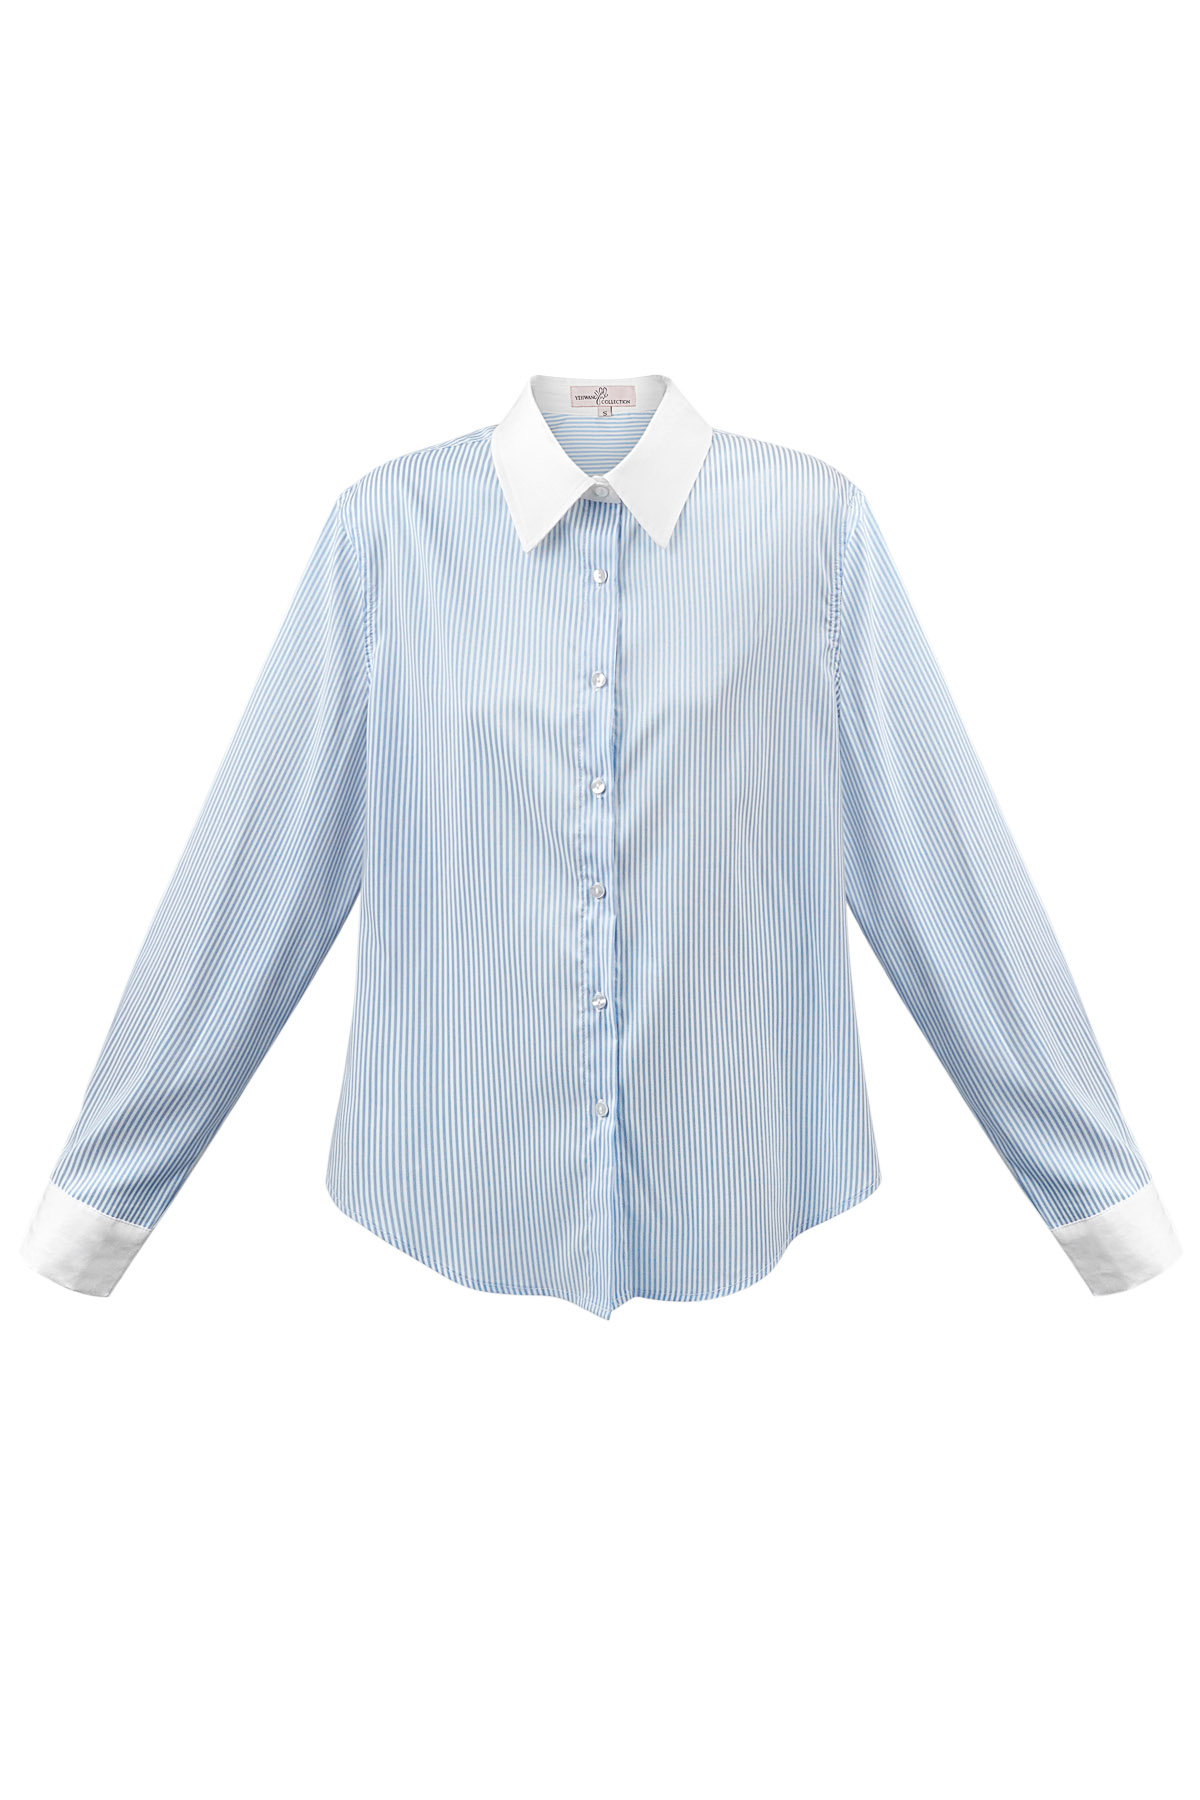 Temel bluz şeritleri - beyaz/mavi h5 